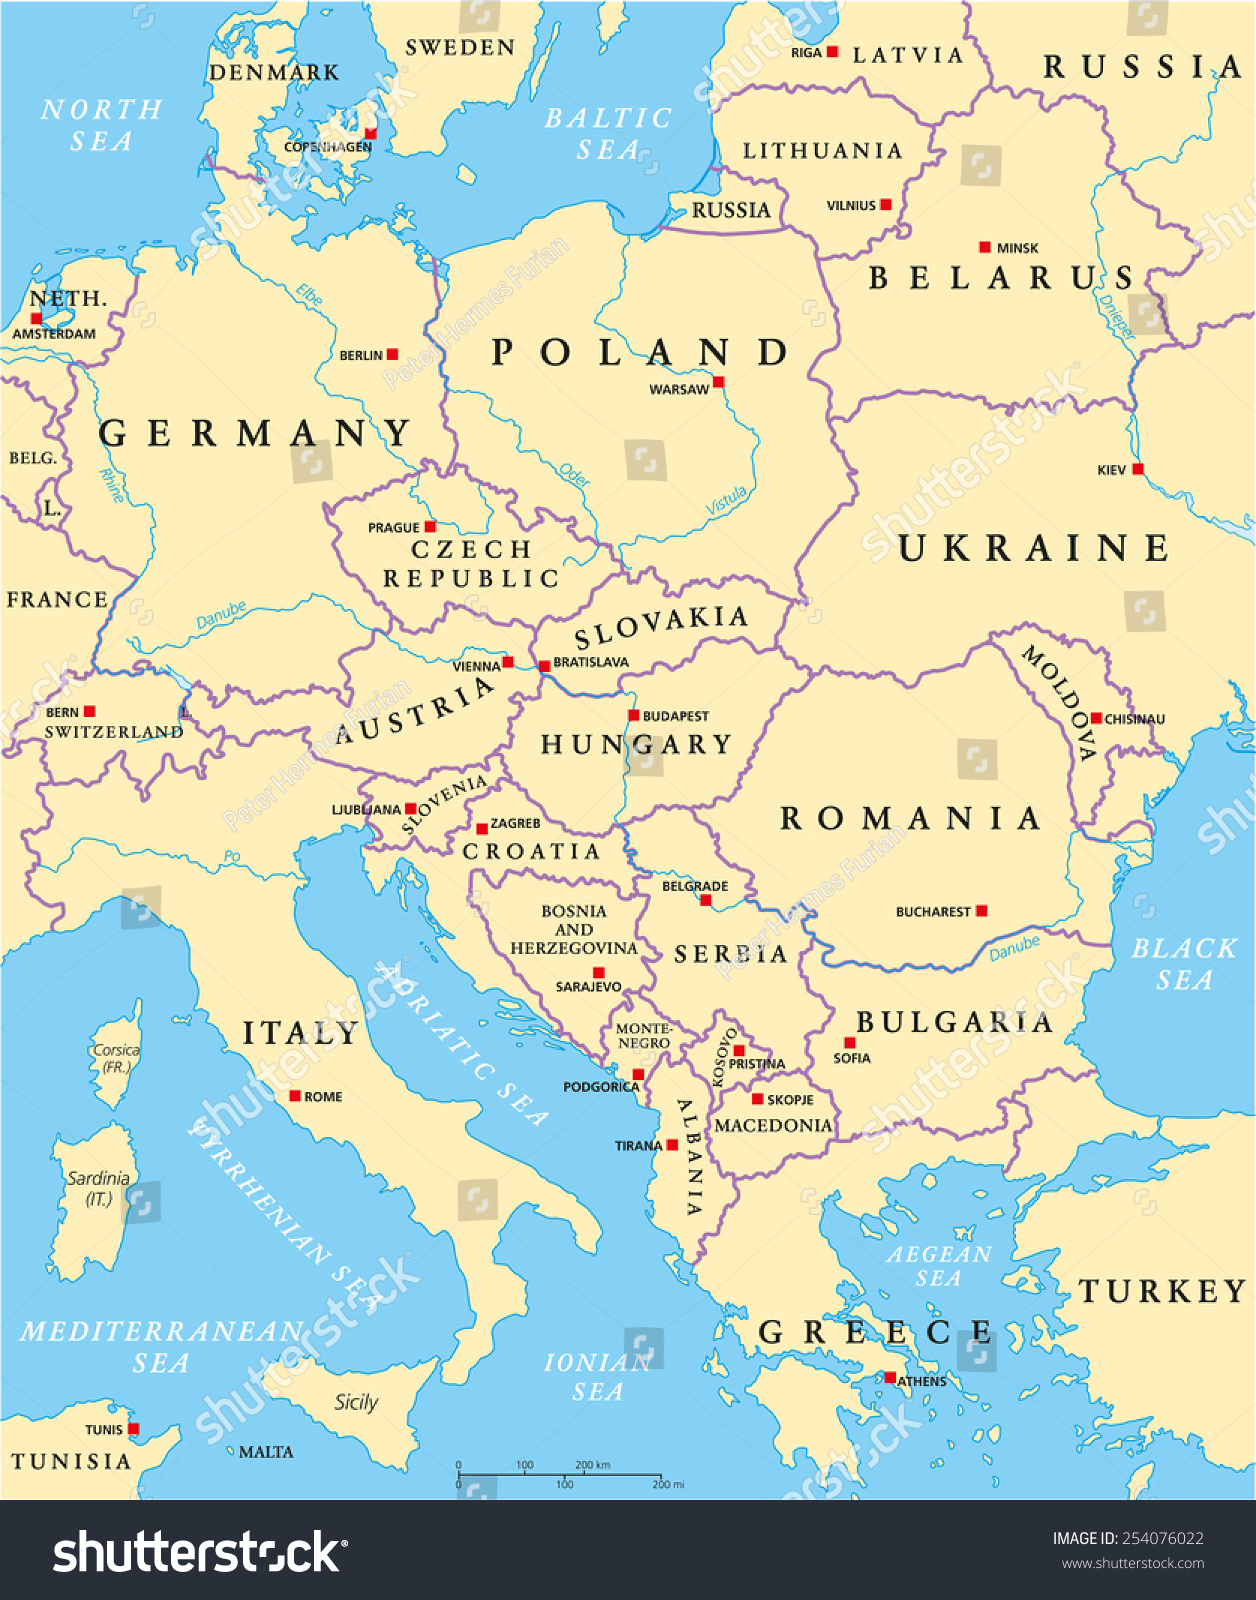 Image Vectorielle De Stock De Carte Politique De L&amp;#039;europe destiné Carte D Europe Avec Les Capitales 